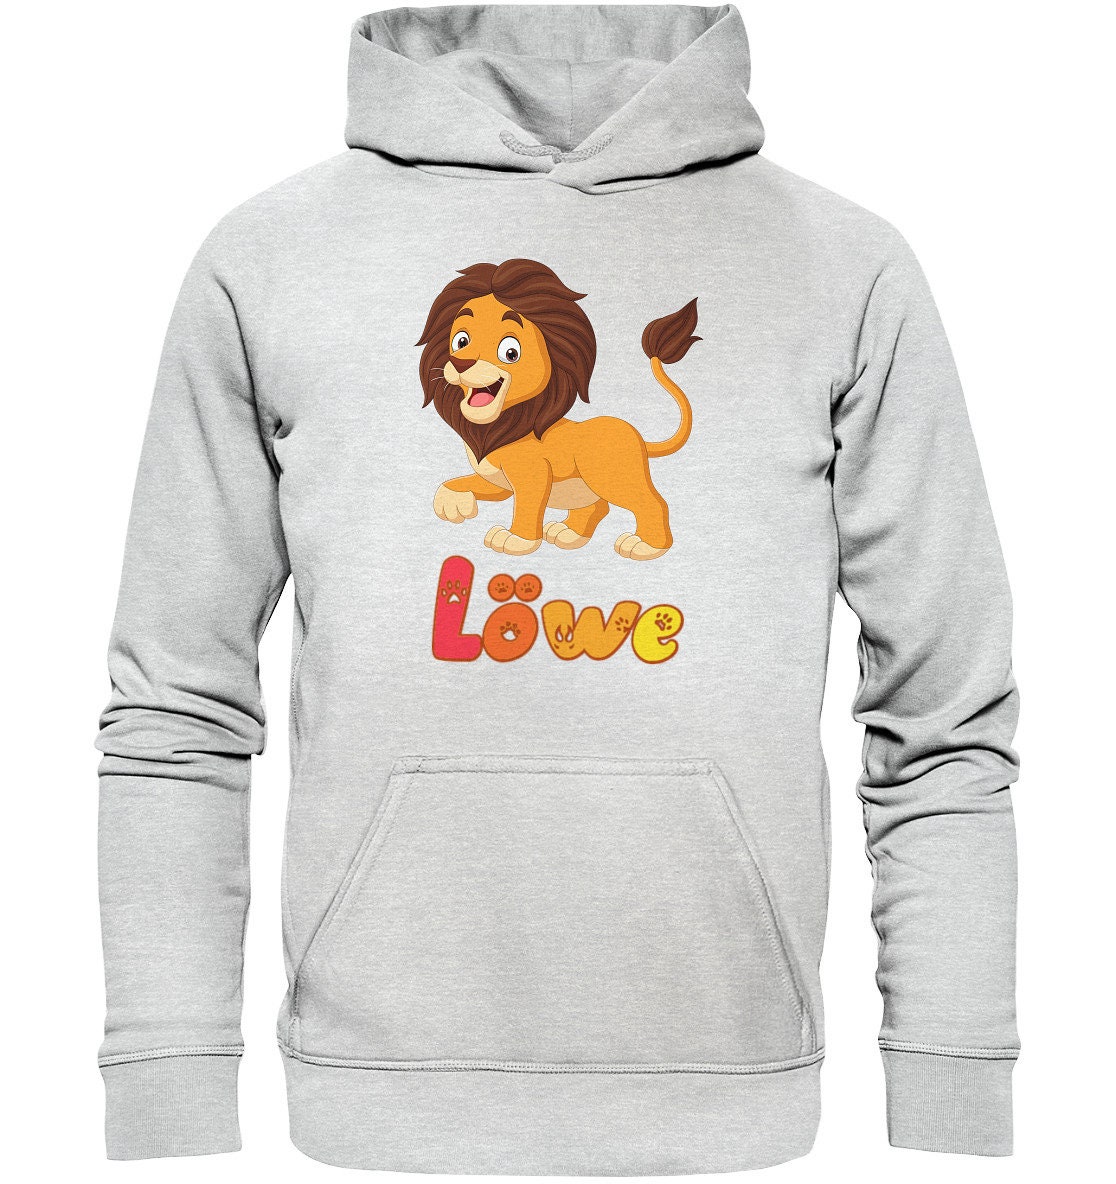 König der löwen hoodie